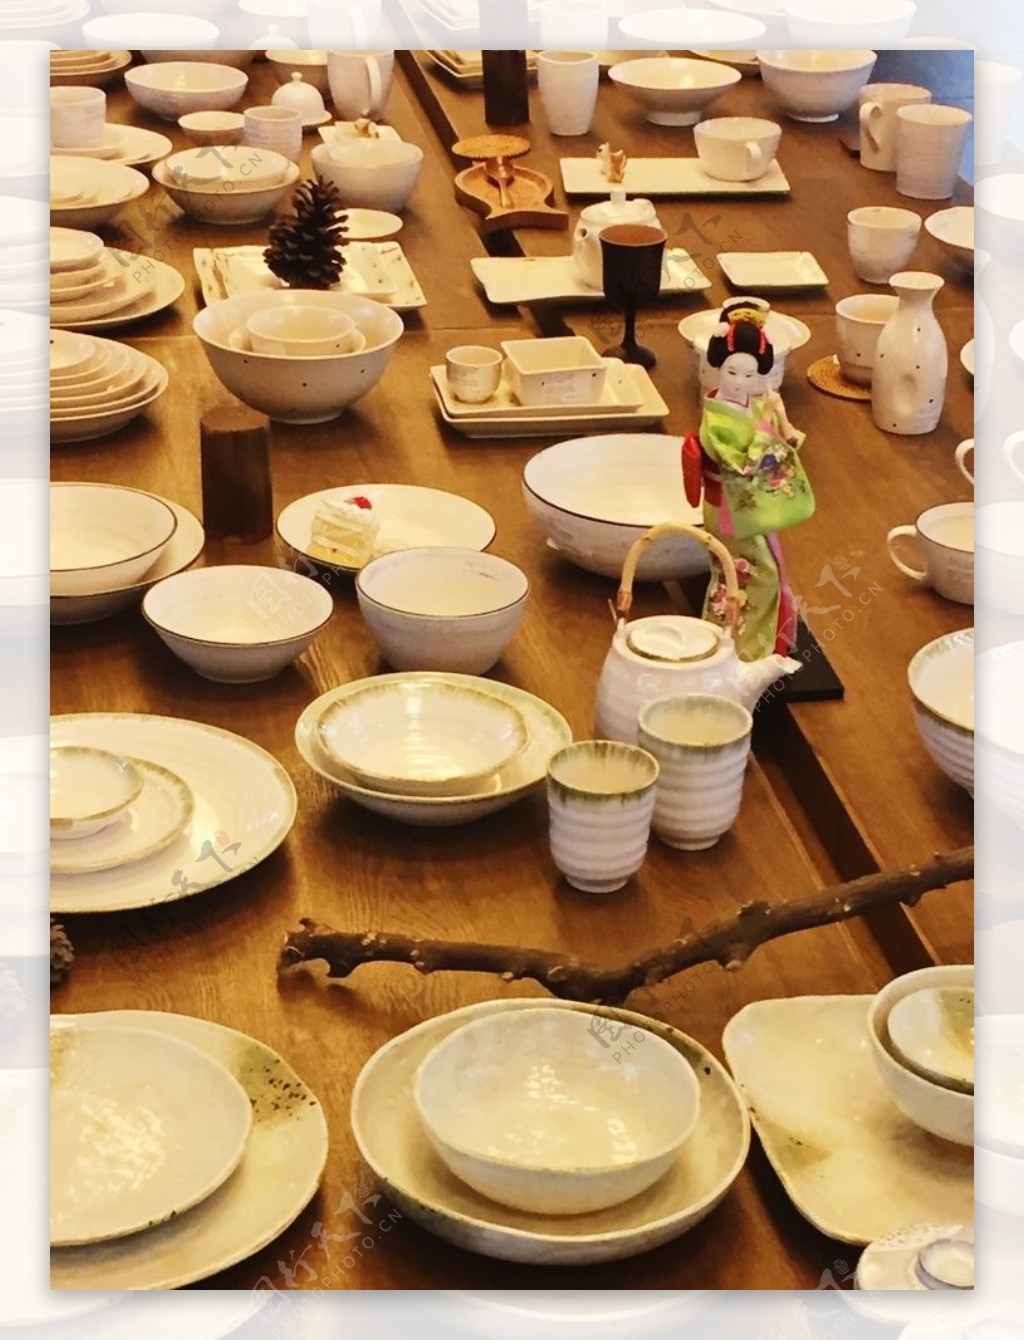 日式陶瓷餐具